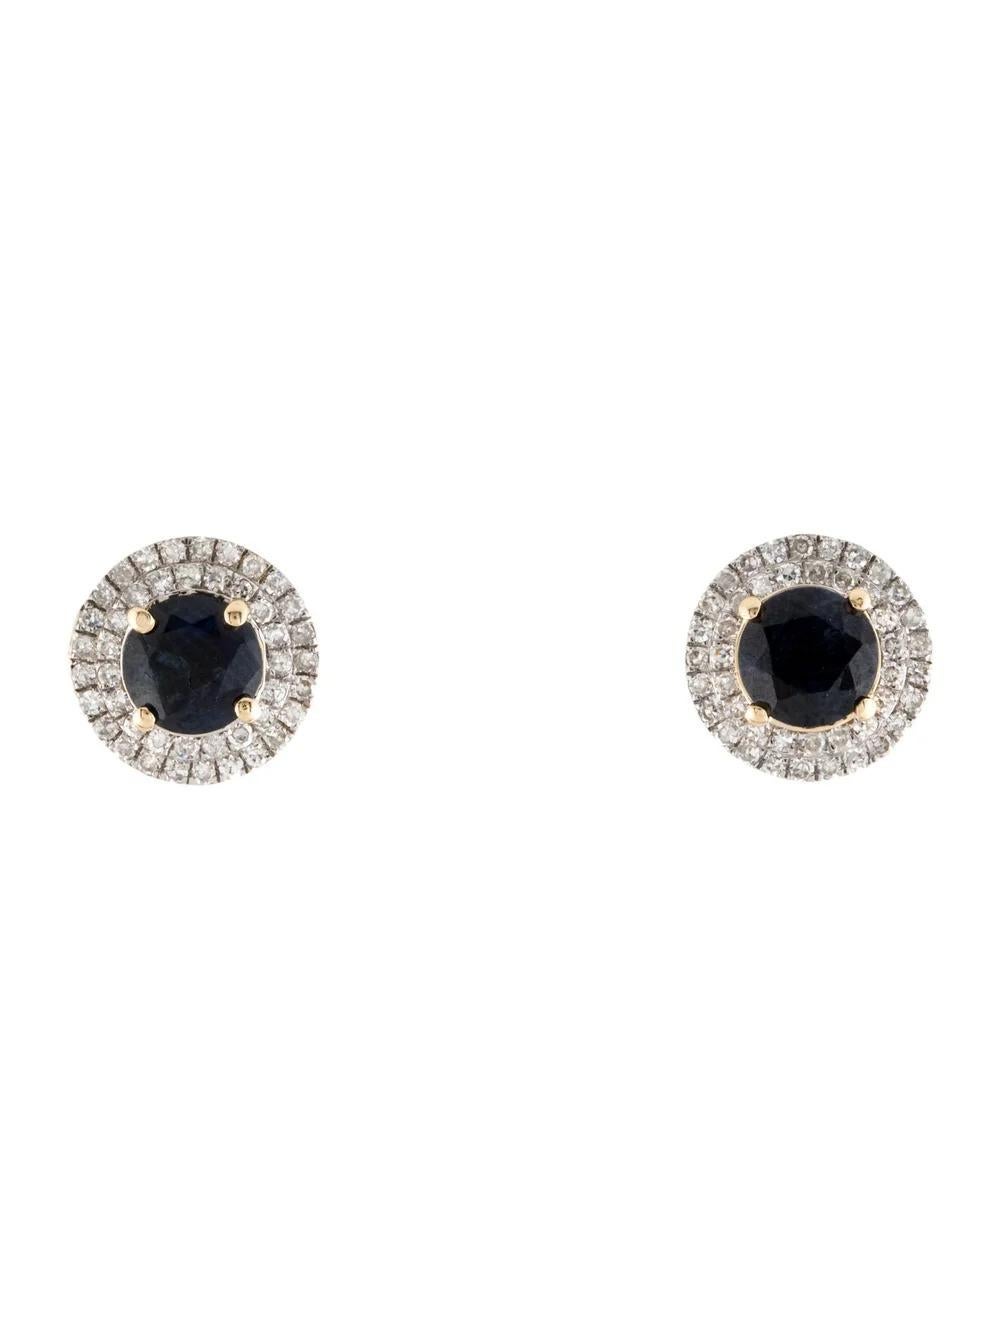 Erhöhen Sie Ihre Eleganz mit diesen exquisiten Ohrringen aus 14 Karat Gelbgold, die zwei atemberaubende runde Brillant-Saphire von insgesamt 1,92 Karat enthalten. Der tiefblaue Farbton der Saphire wird durch 88 schillernde Diamanten von insgesamt